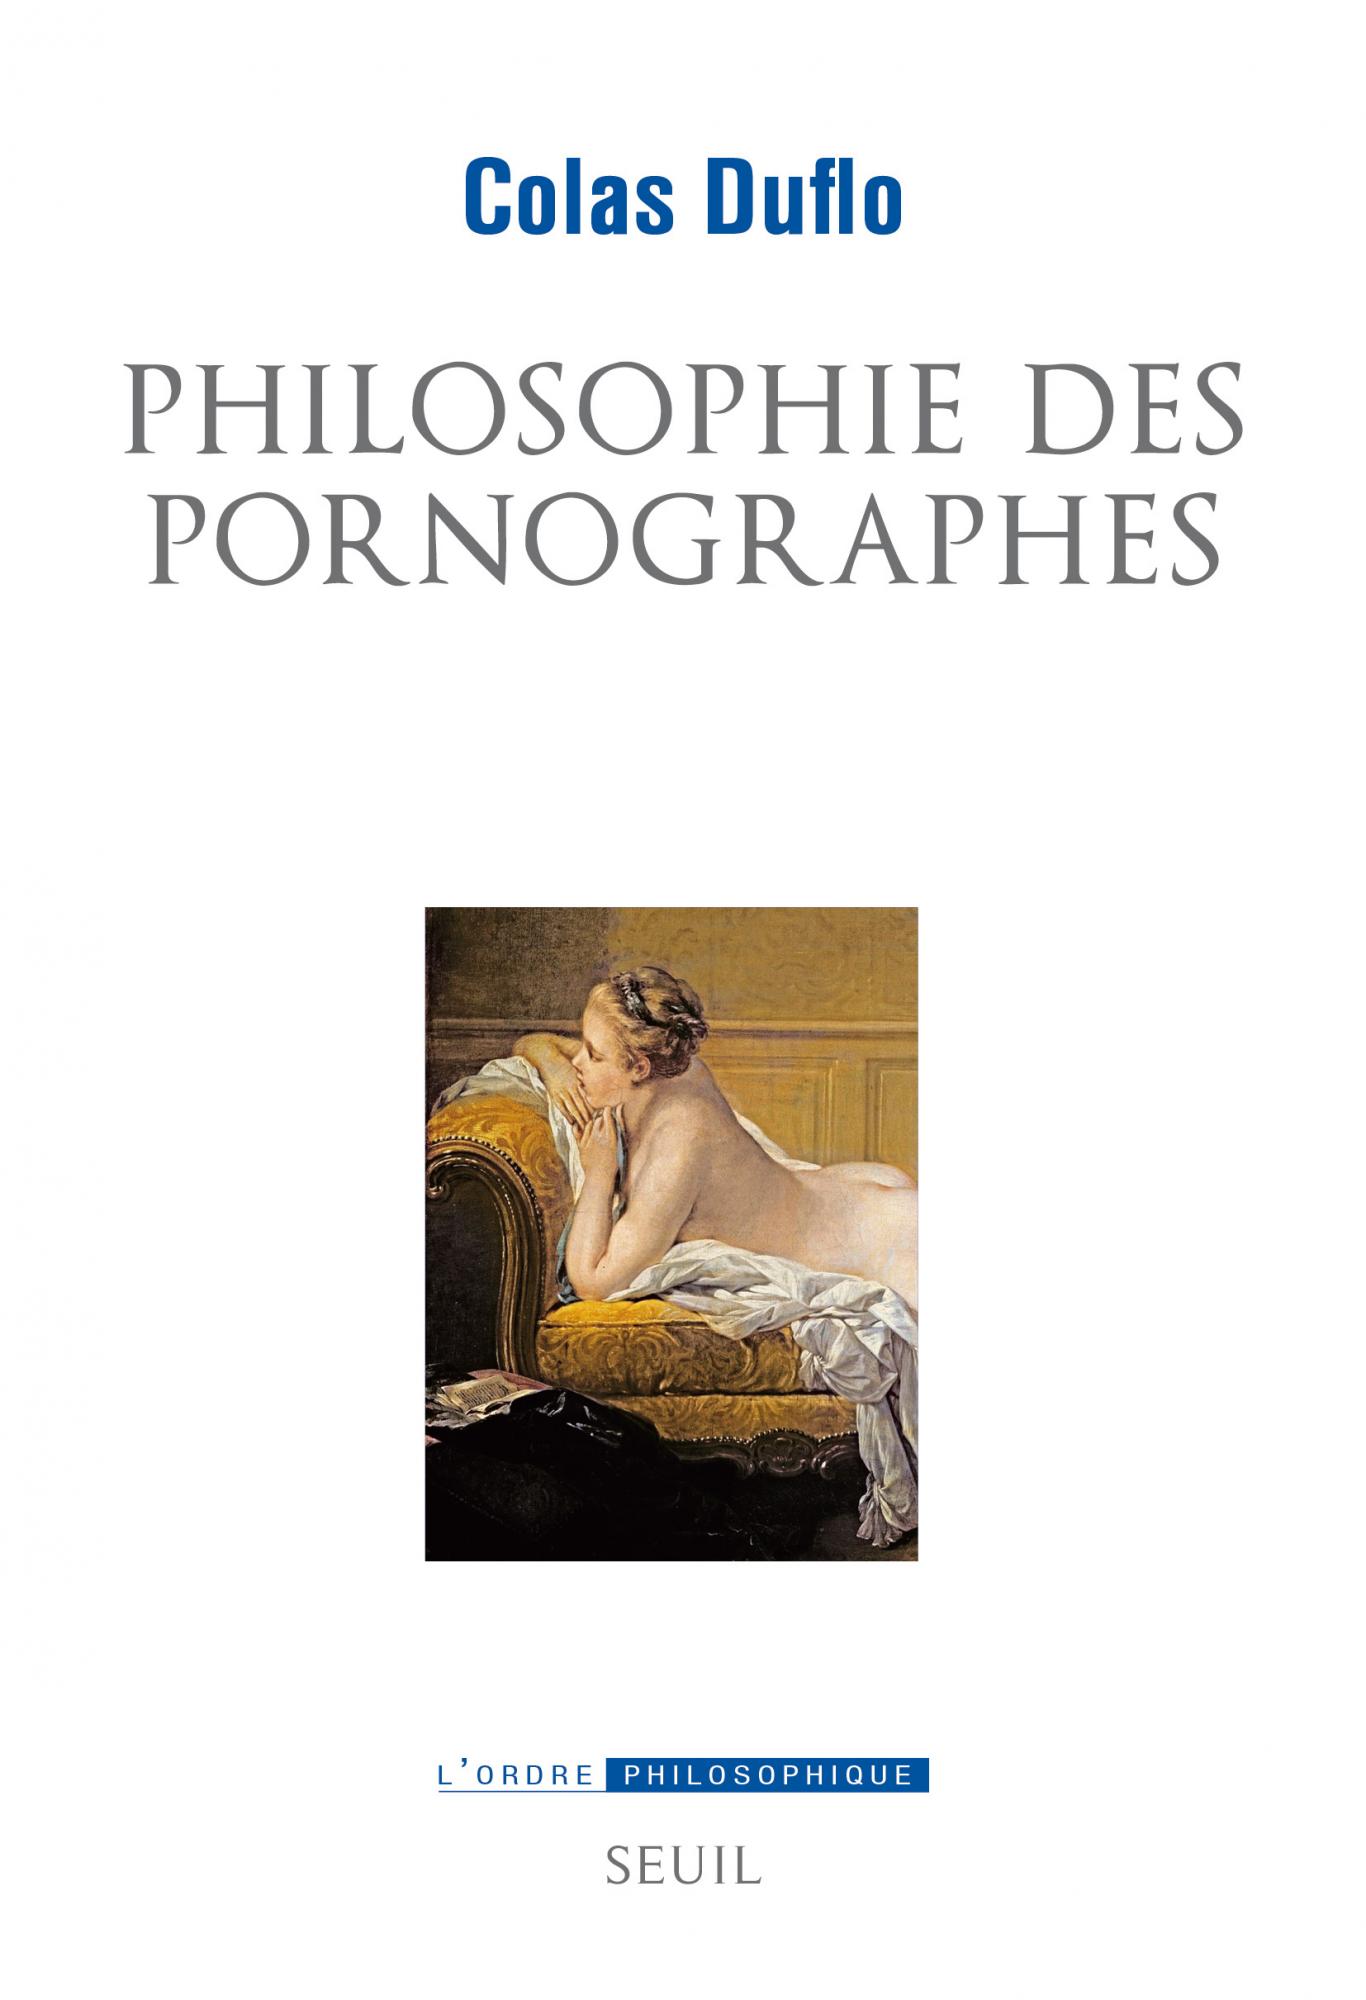 Conférence de Colas Duflo sur Philosophie des pornographes (Montpellier)